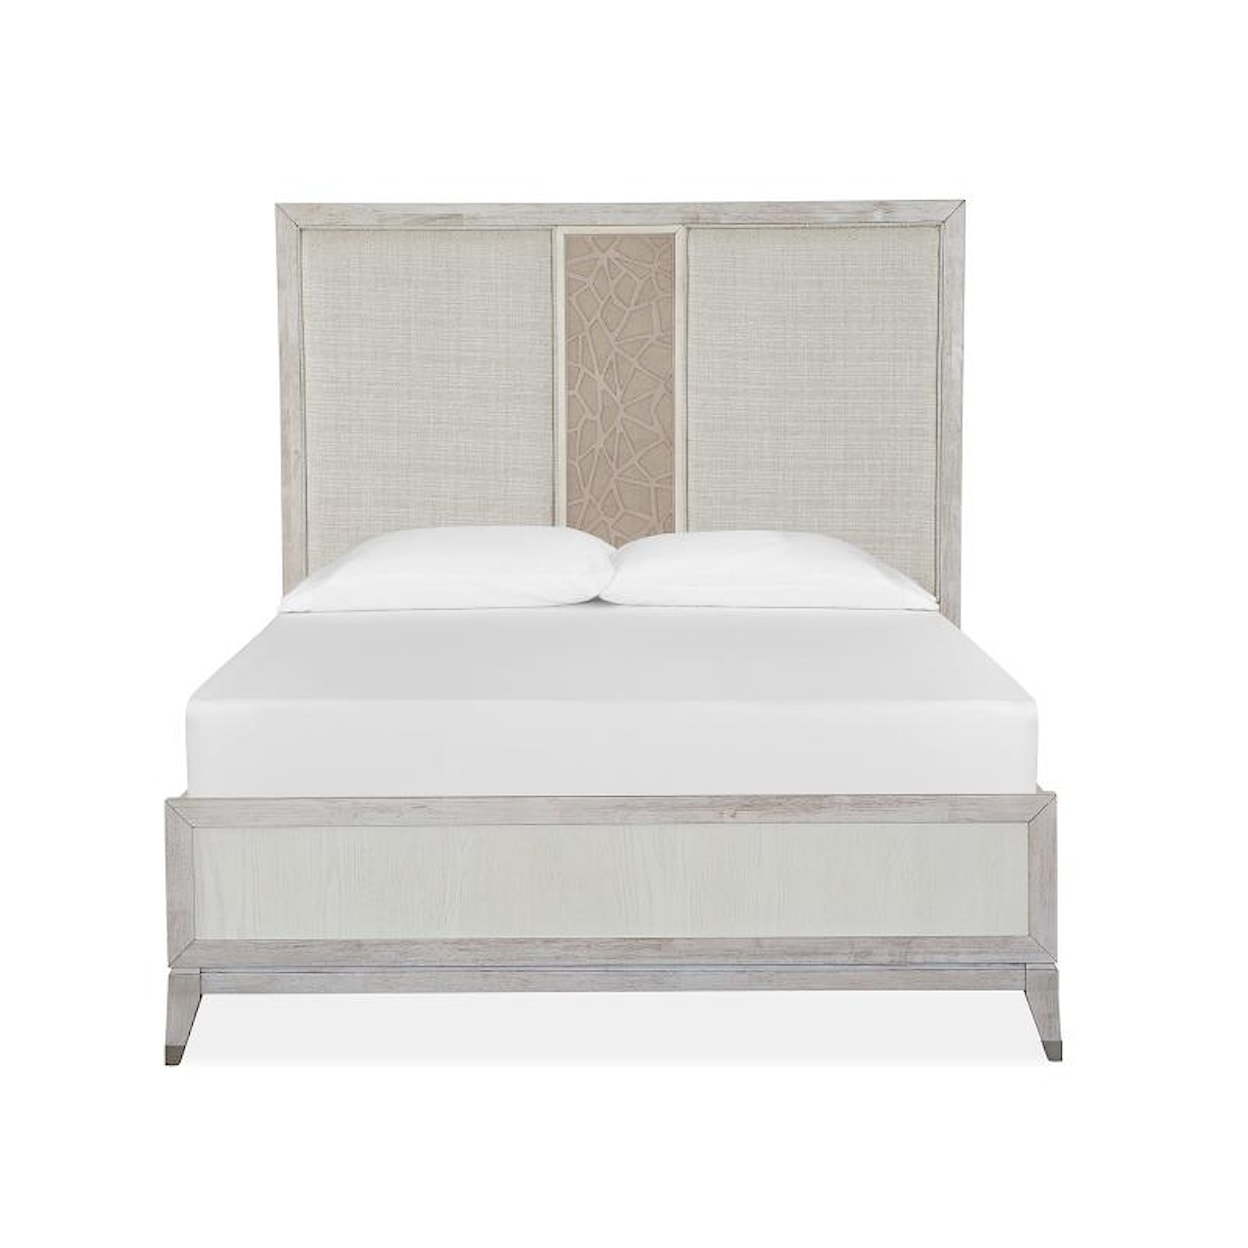 Magnussen Home Lenox Bedroom Queen Bed